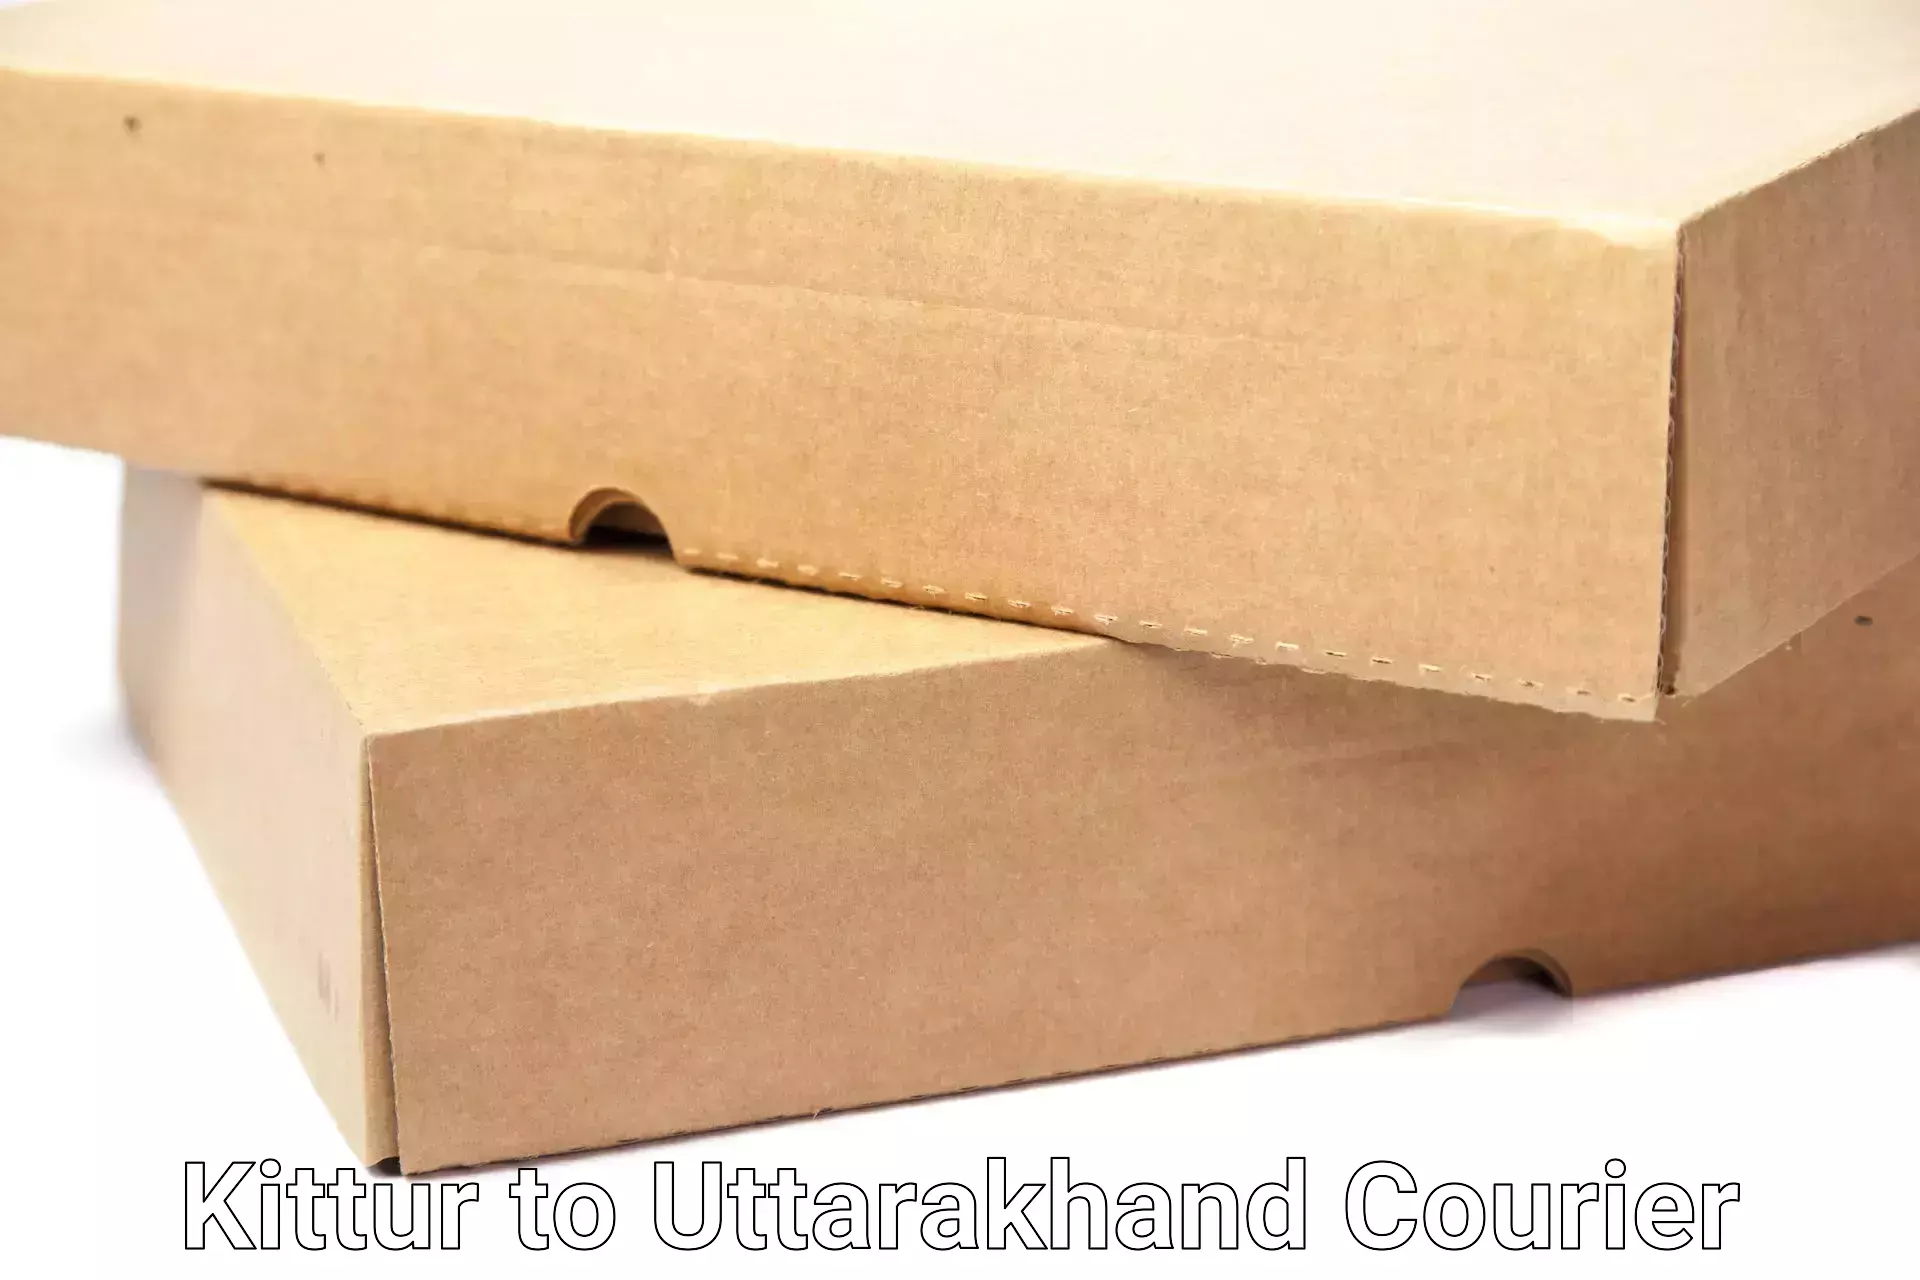 Trusted household movers Kittur to Uttarakhand